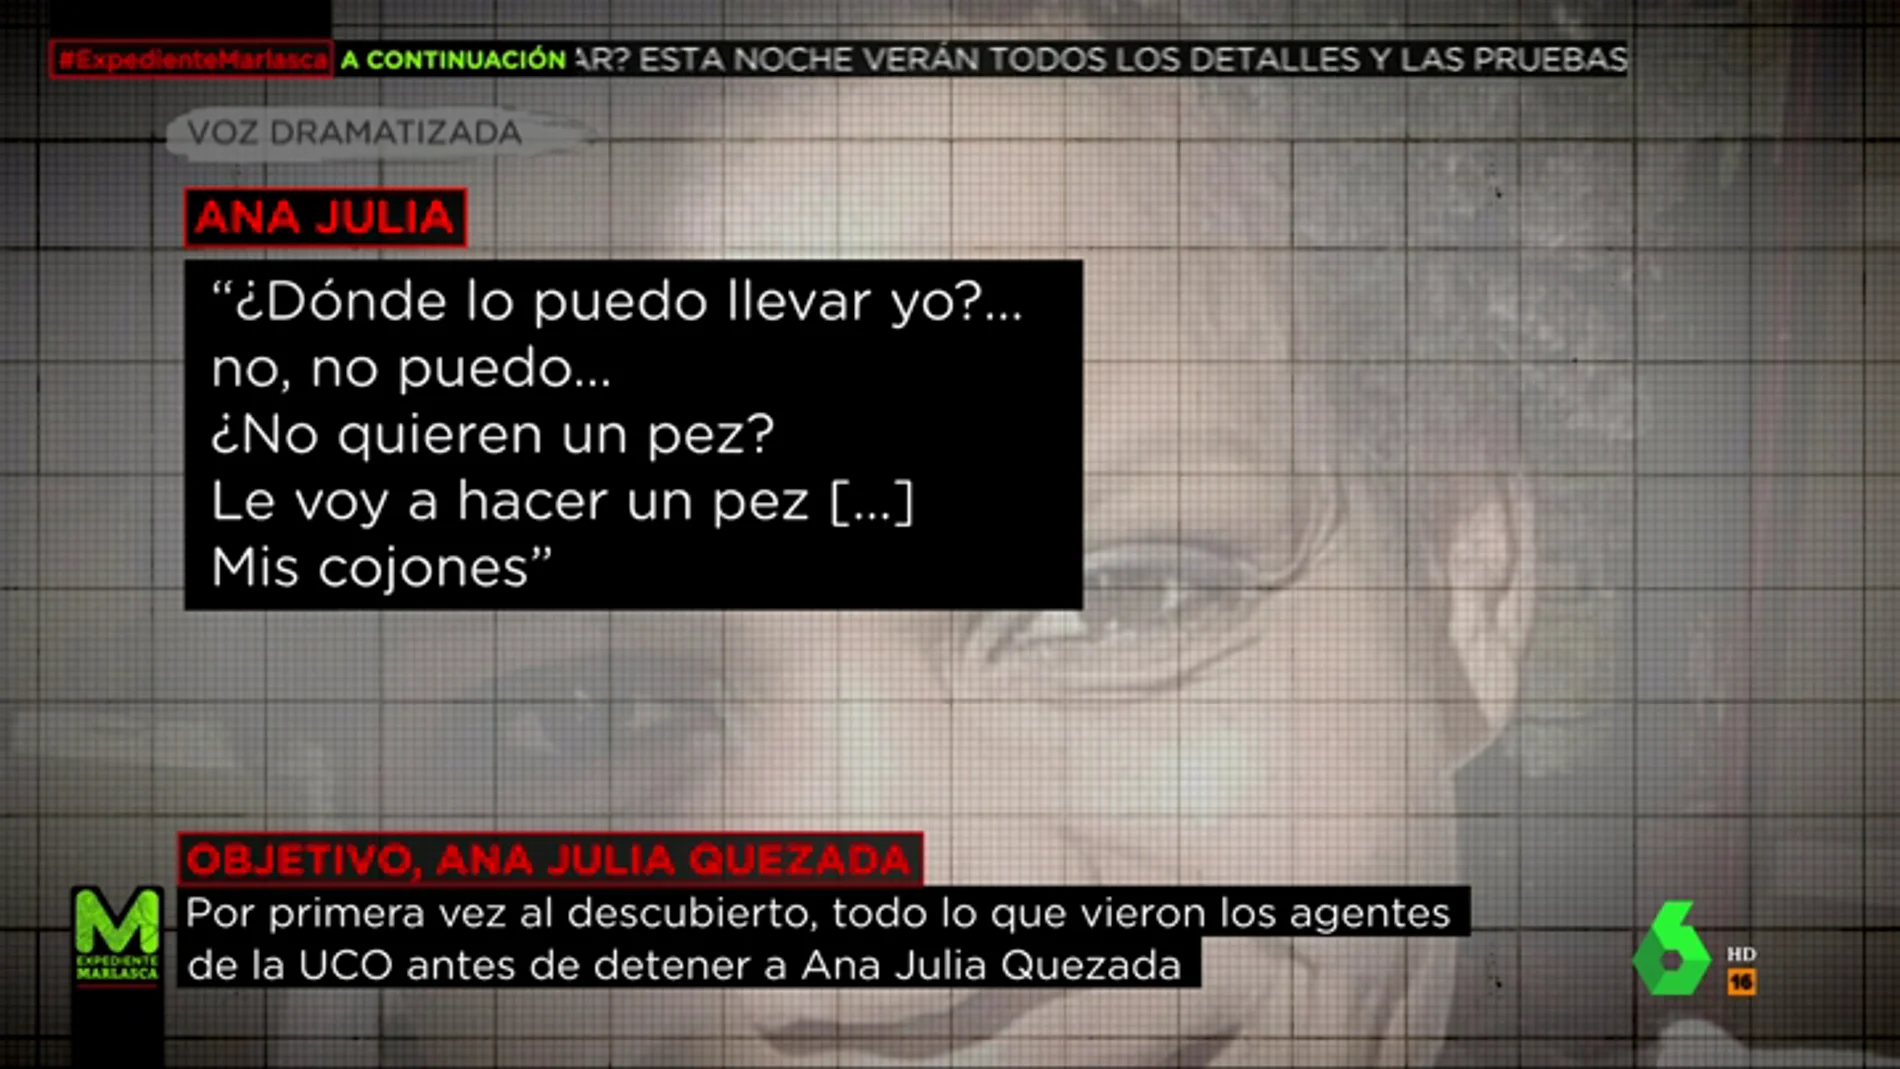 Las grabaciones a Ana Julia Quezada cuando trasladaba a Gabriel: "¿No quieren un pez? Les voy a hacer un pez... mis cojones"